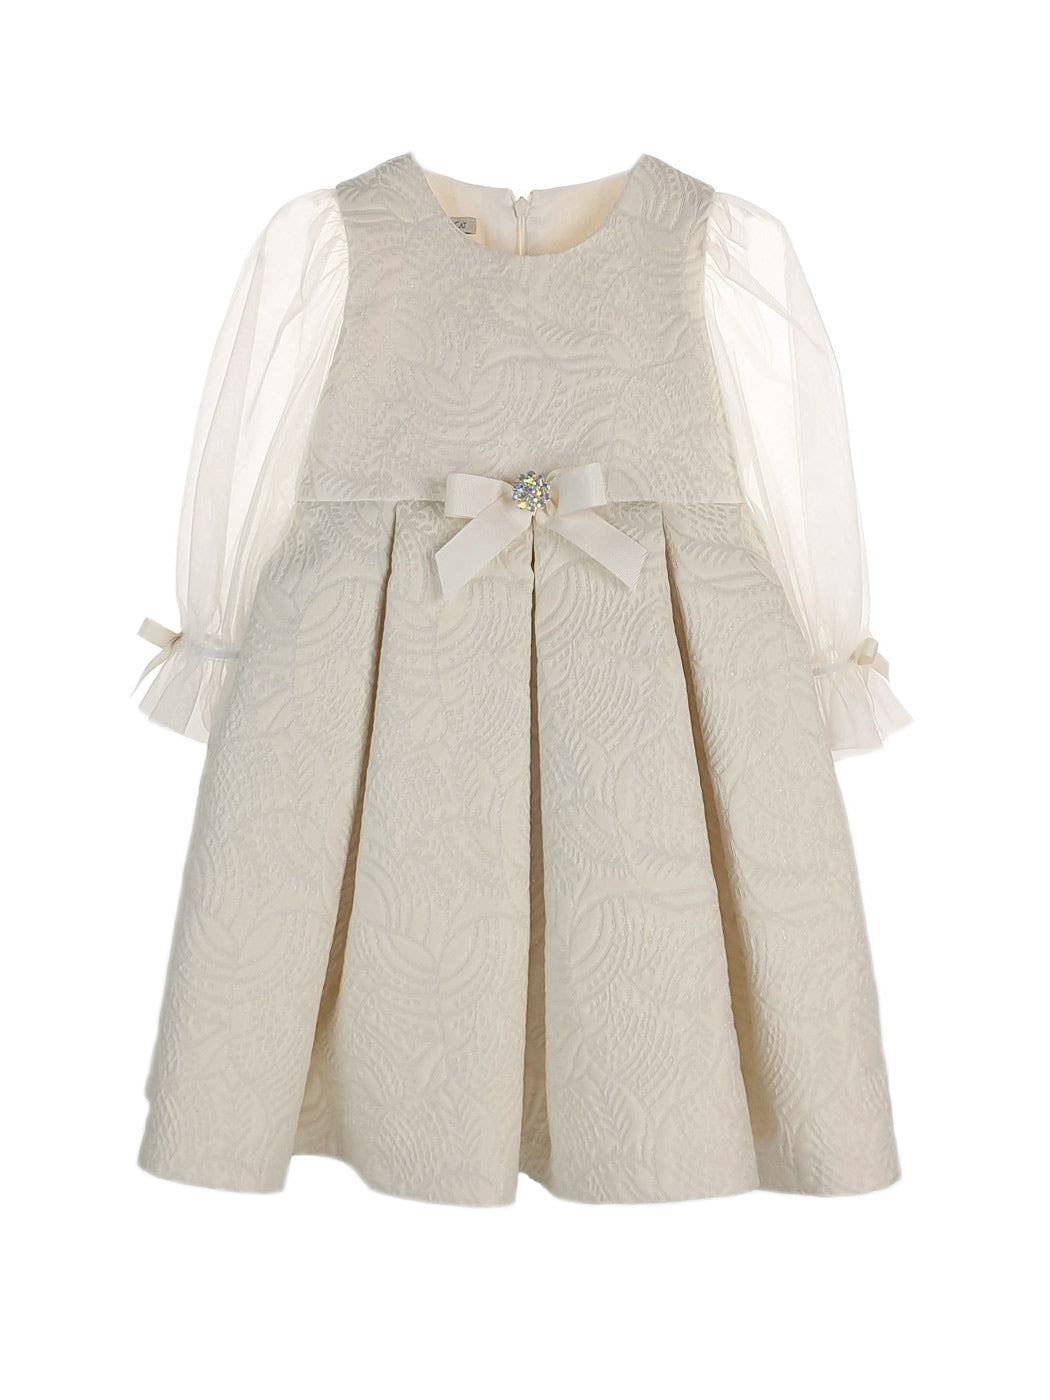 Βρεφικό φόρεμα Brocade με τούλινα μανίκια - EDUARDA